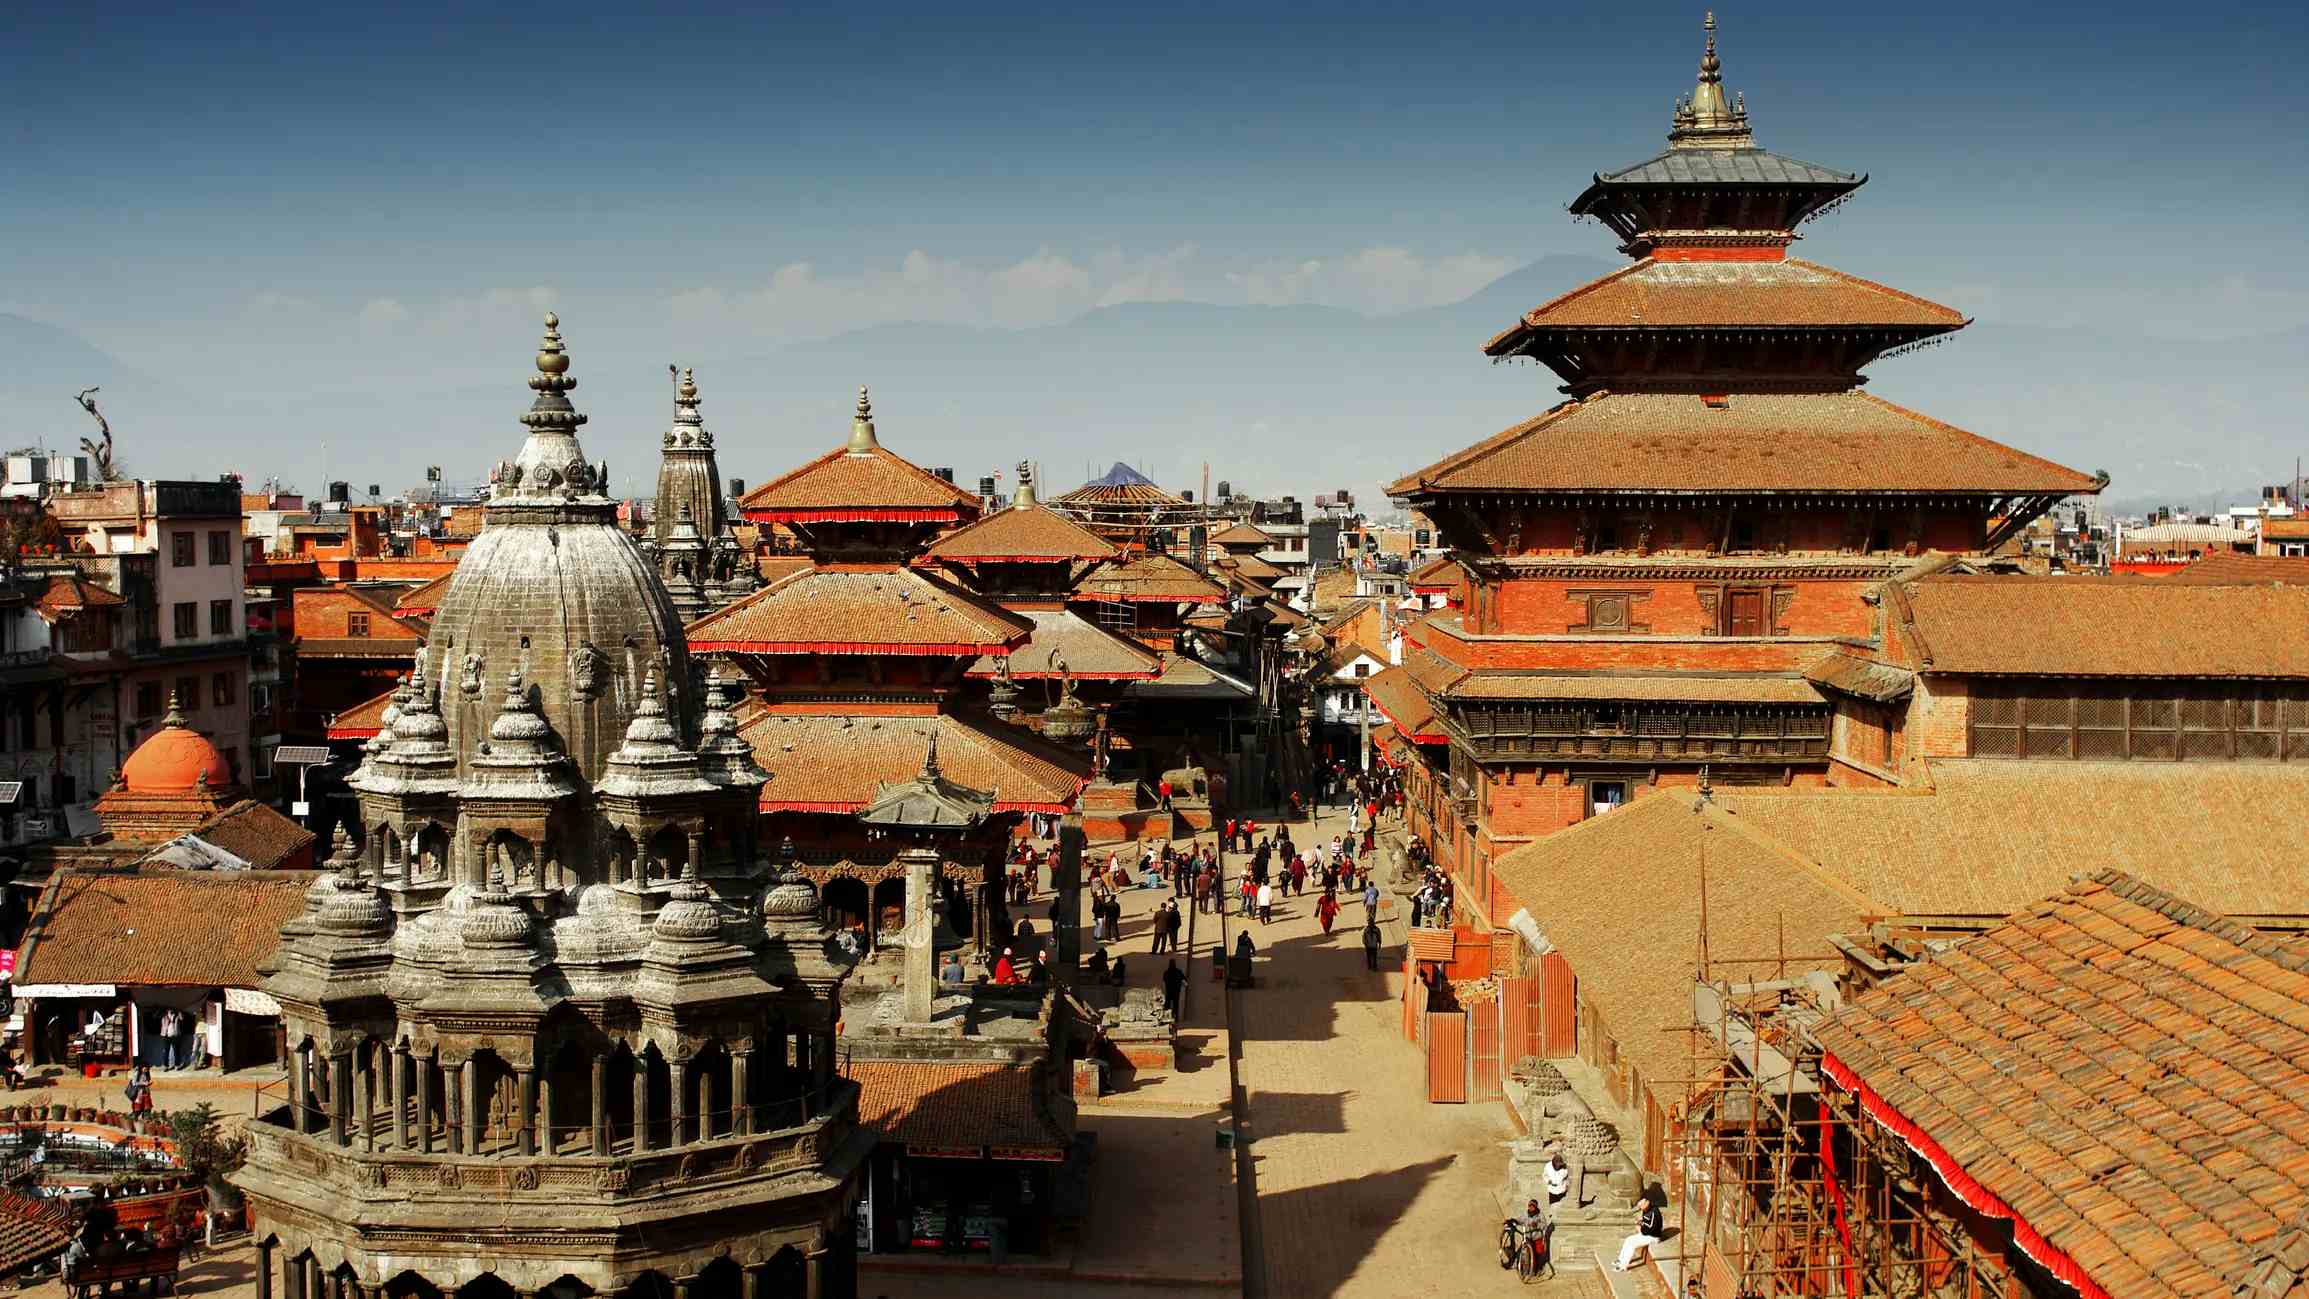 Kathmandu Durbar Square image